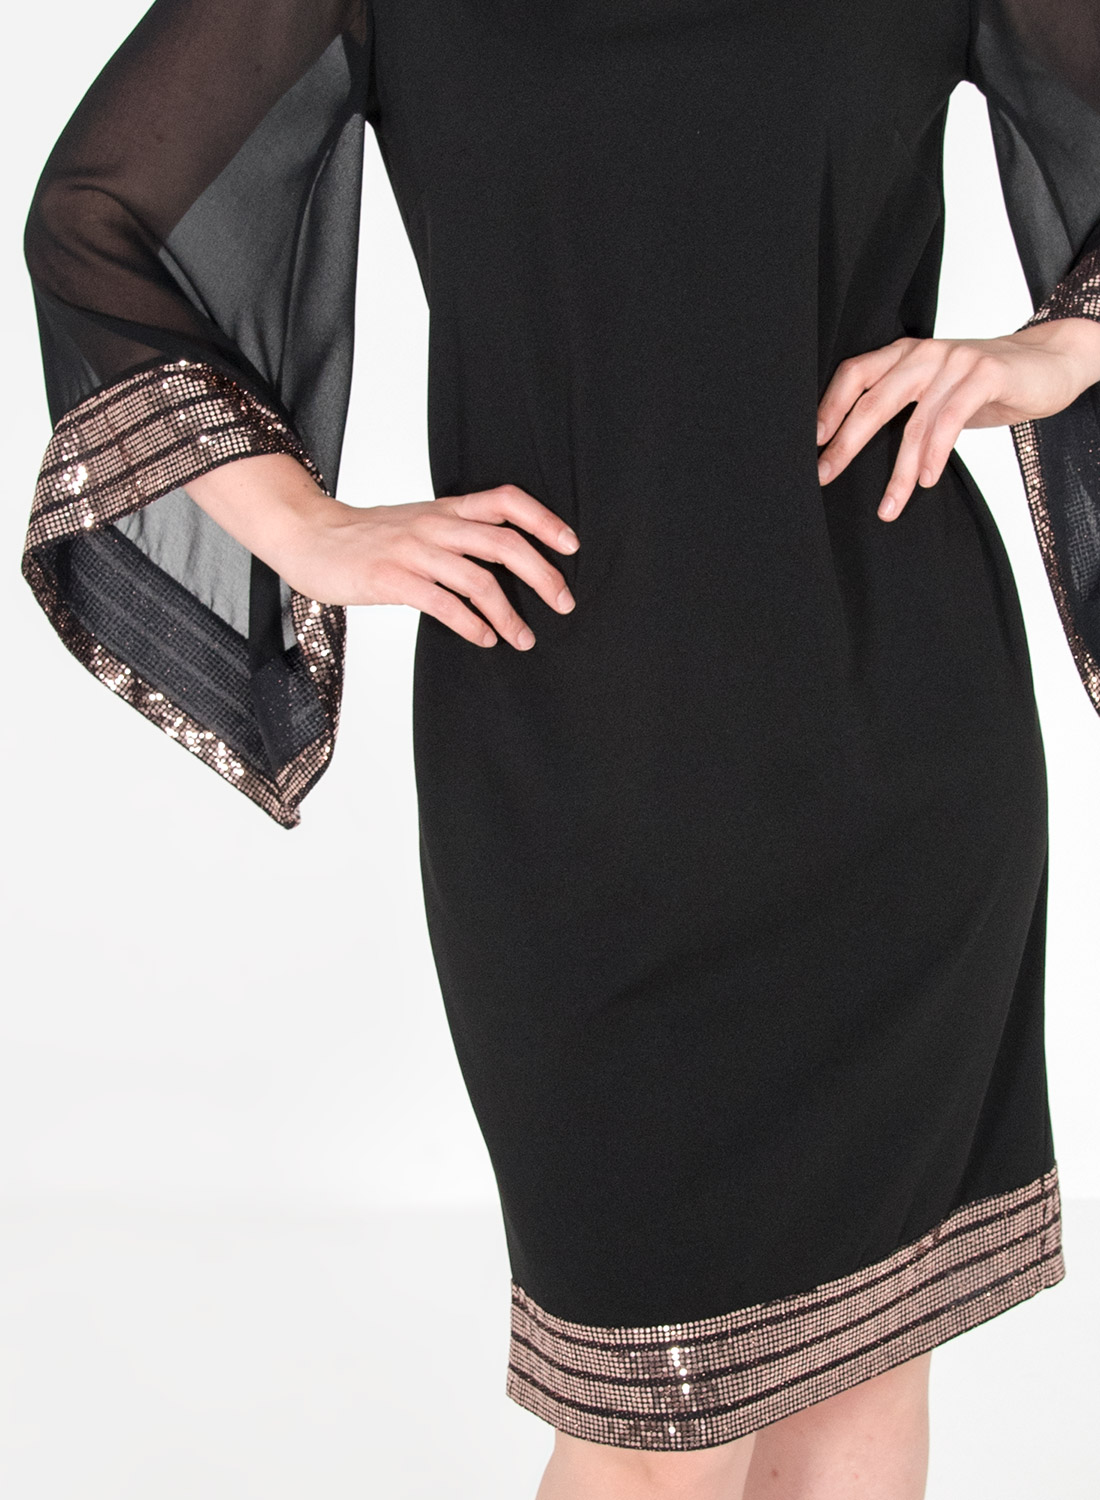 Μαύρο κολακευτικό φόρεμα με παγιέτες